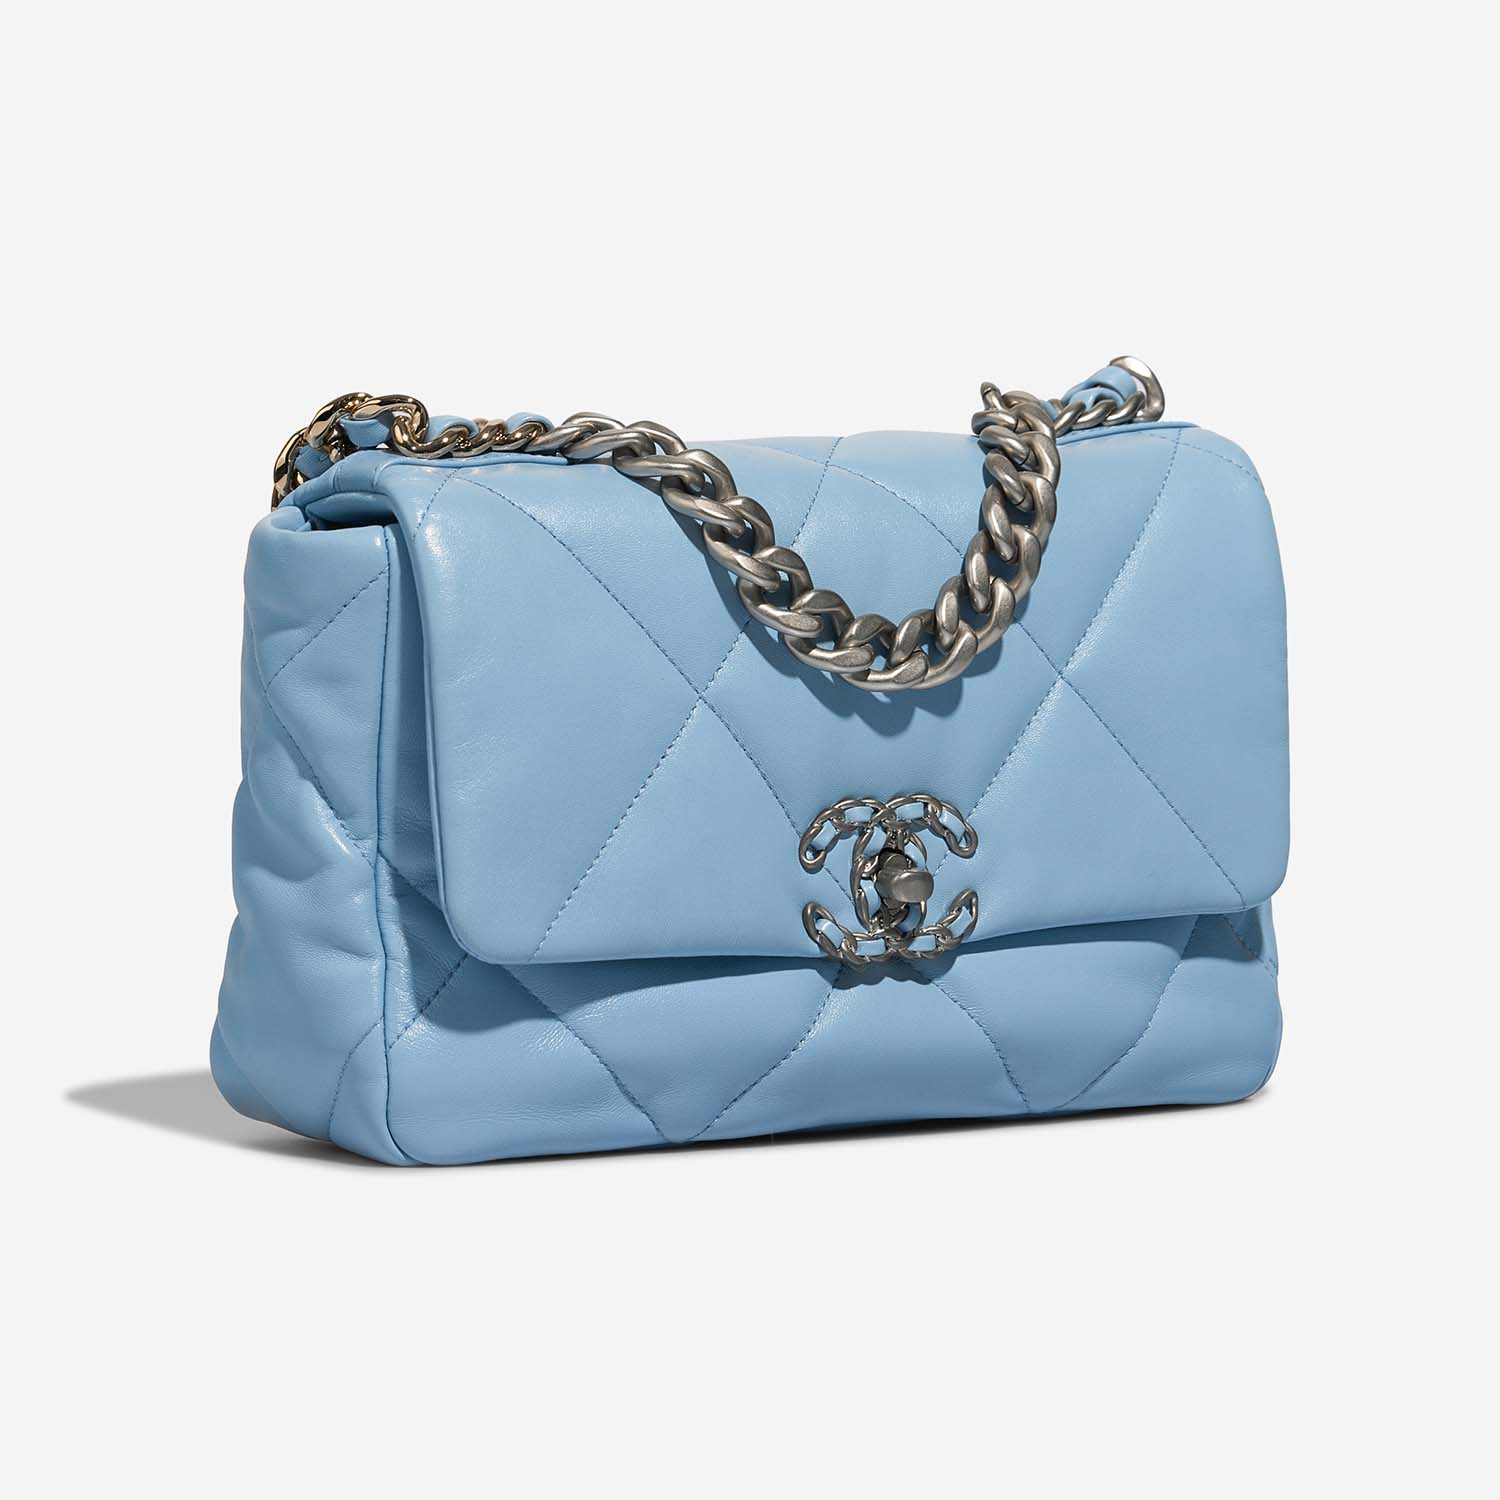 Chanel 19 Flapbag Lightblue Side Front | Sell your designer bag on Saclab.com